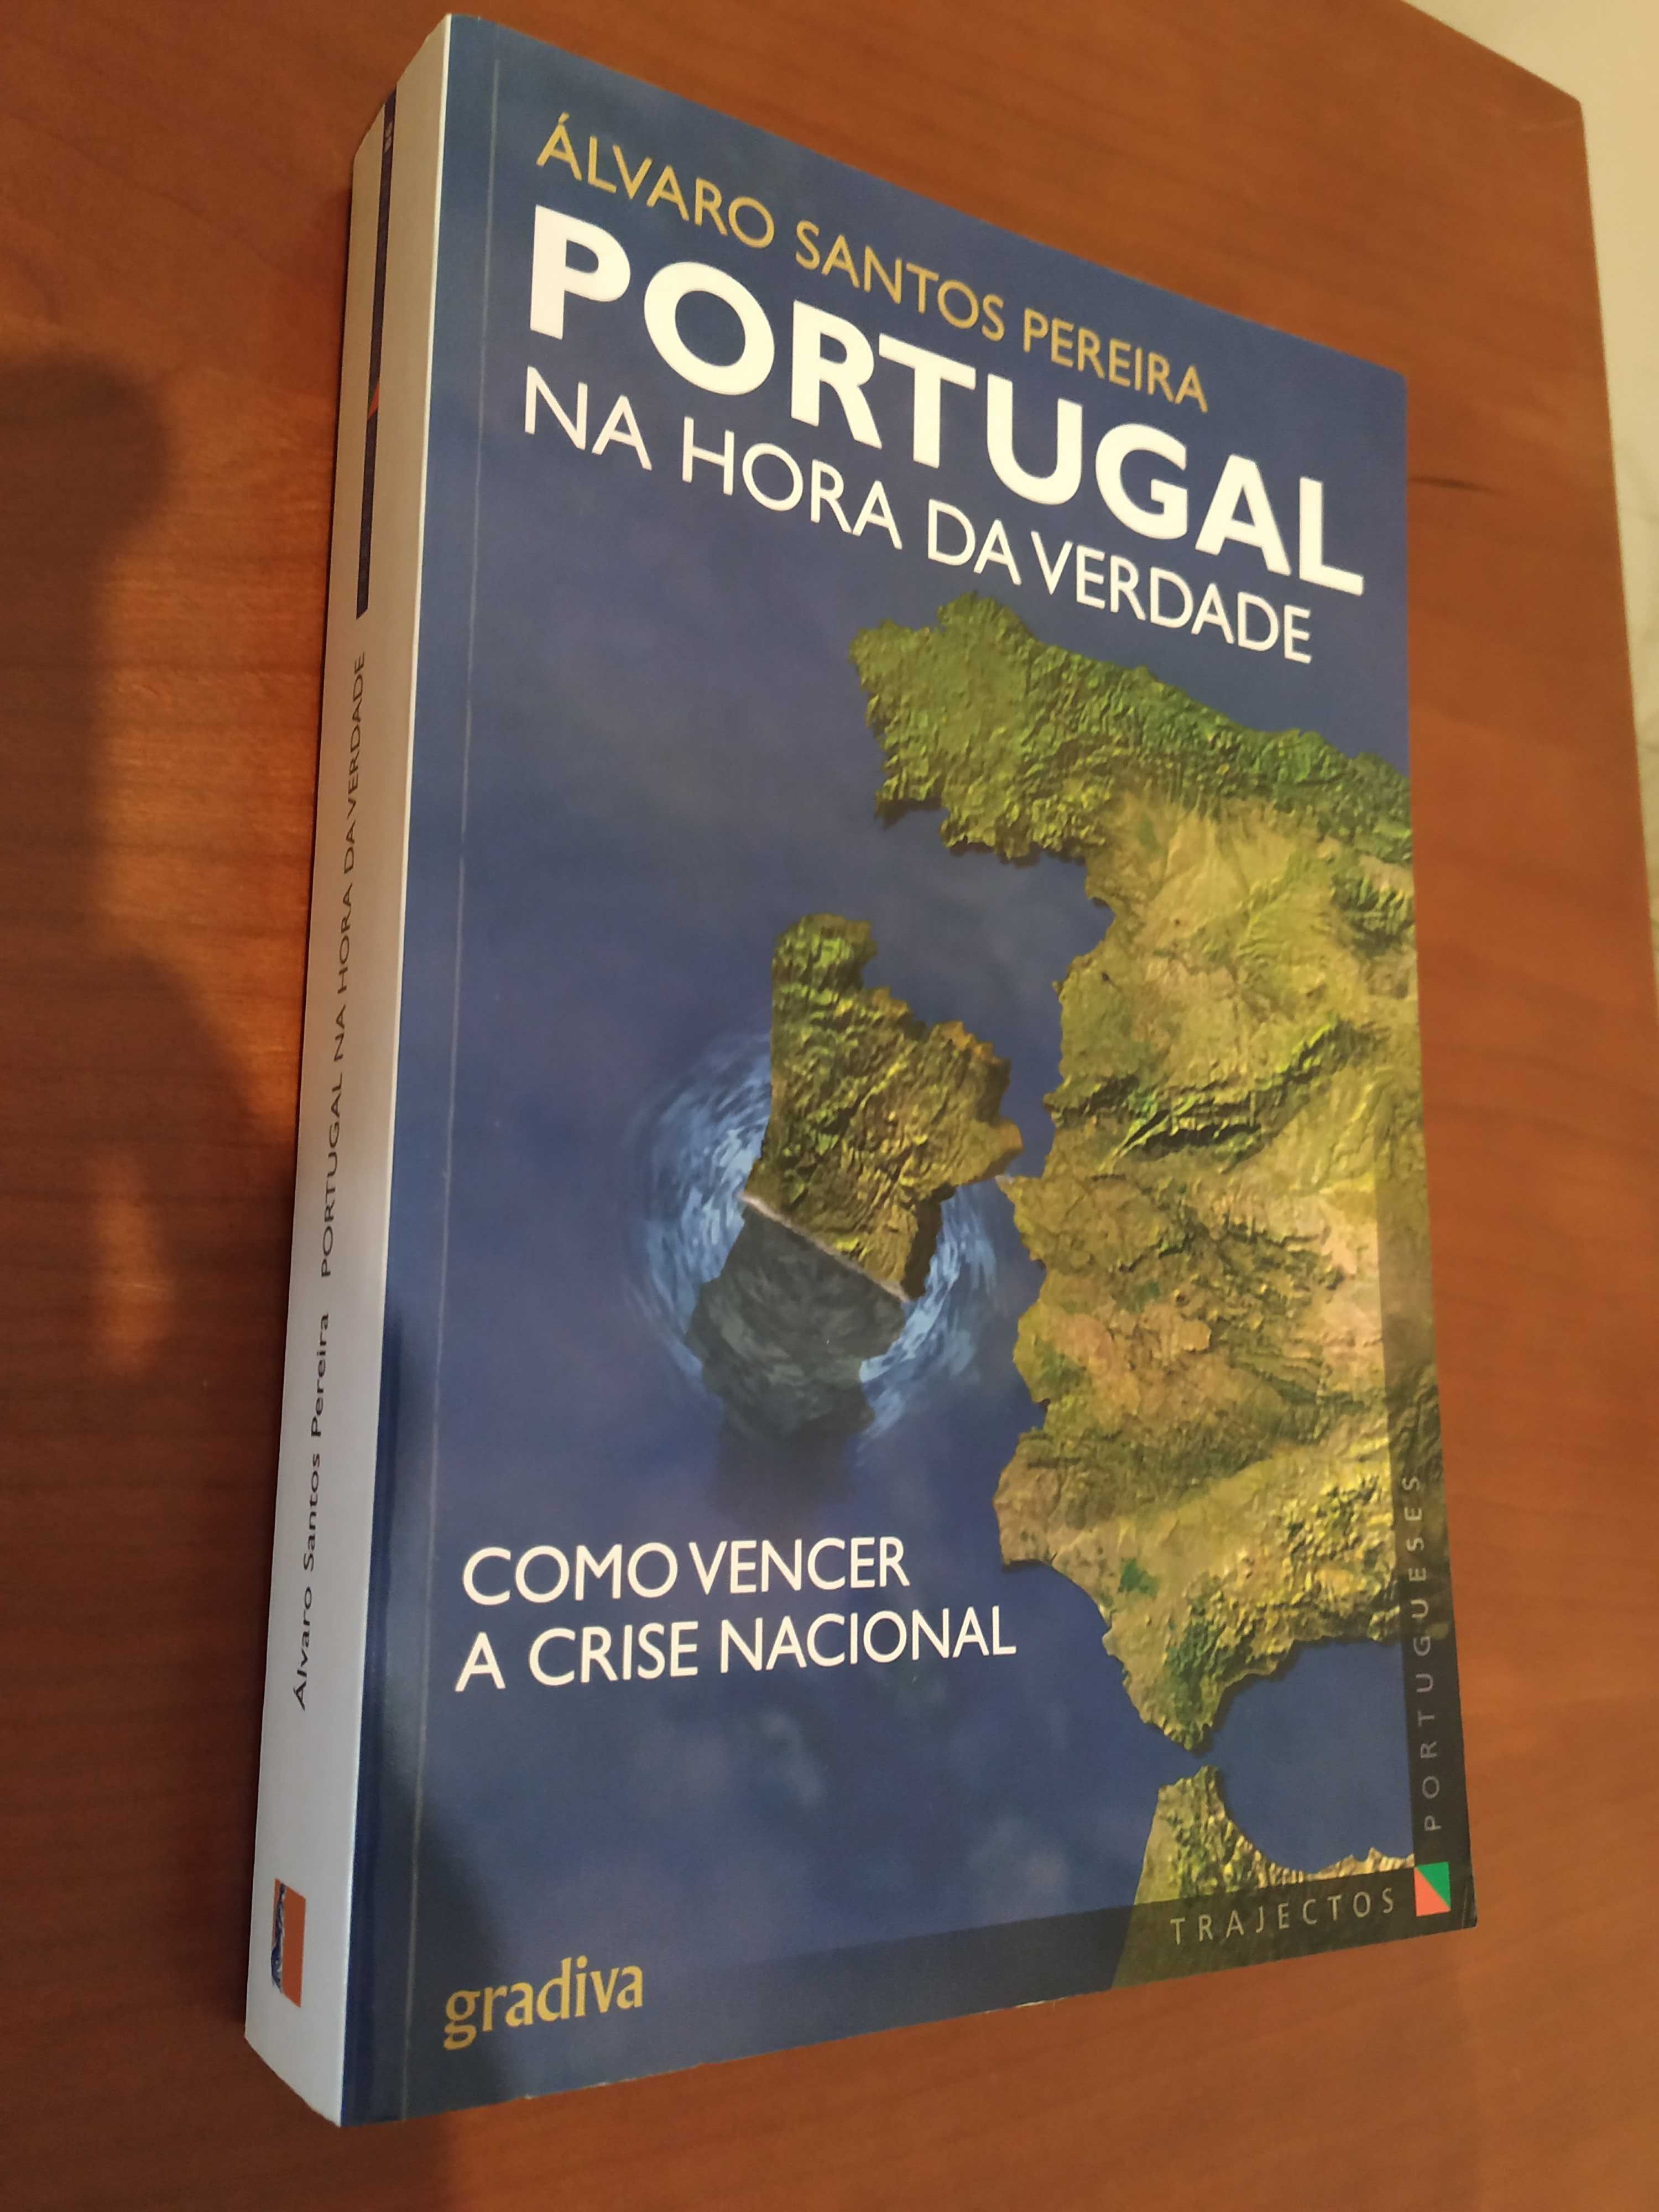 Livro "Portugal na Hora da Verdade"